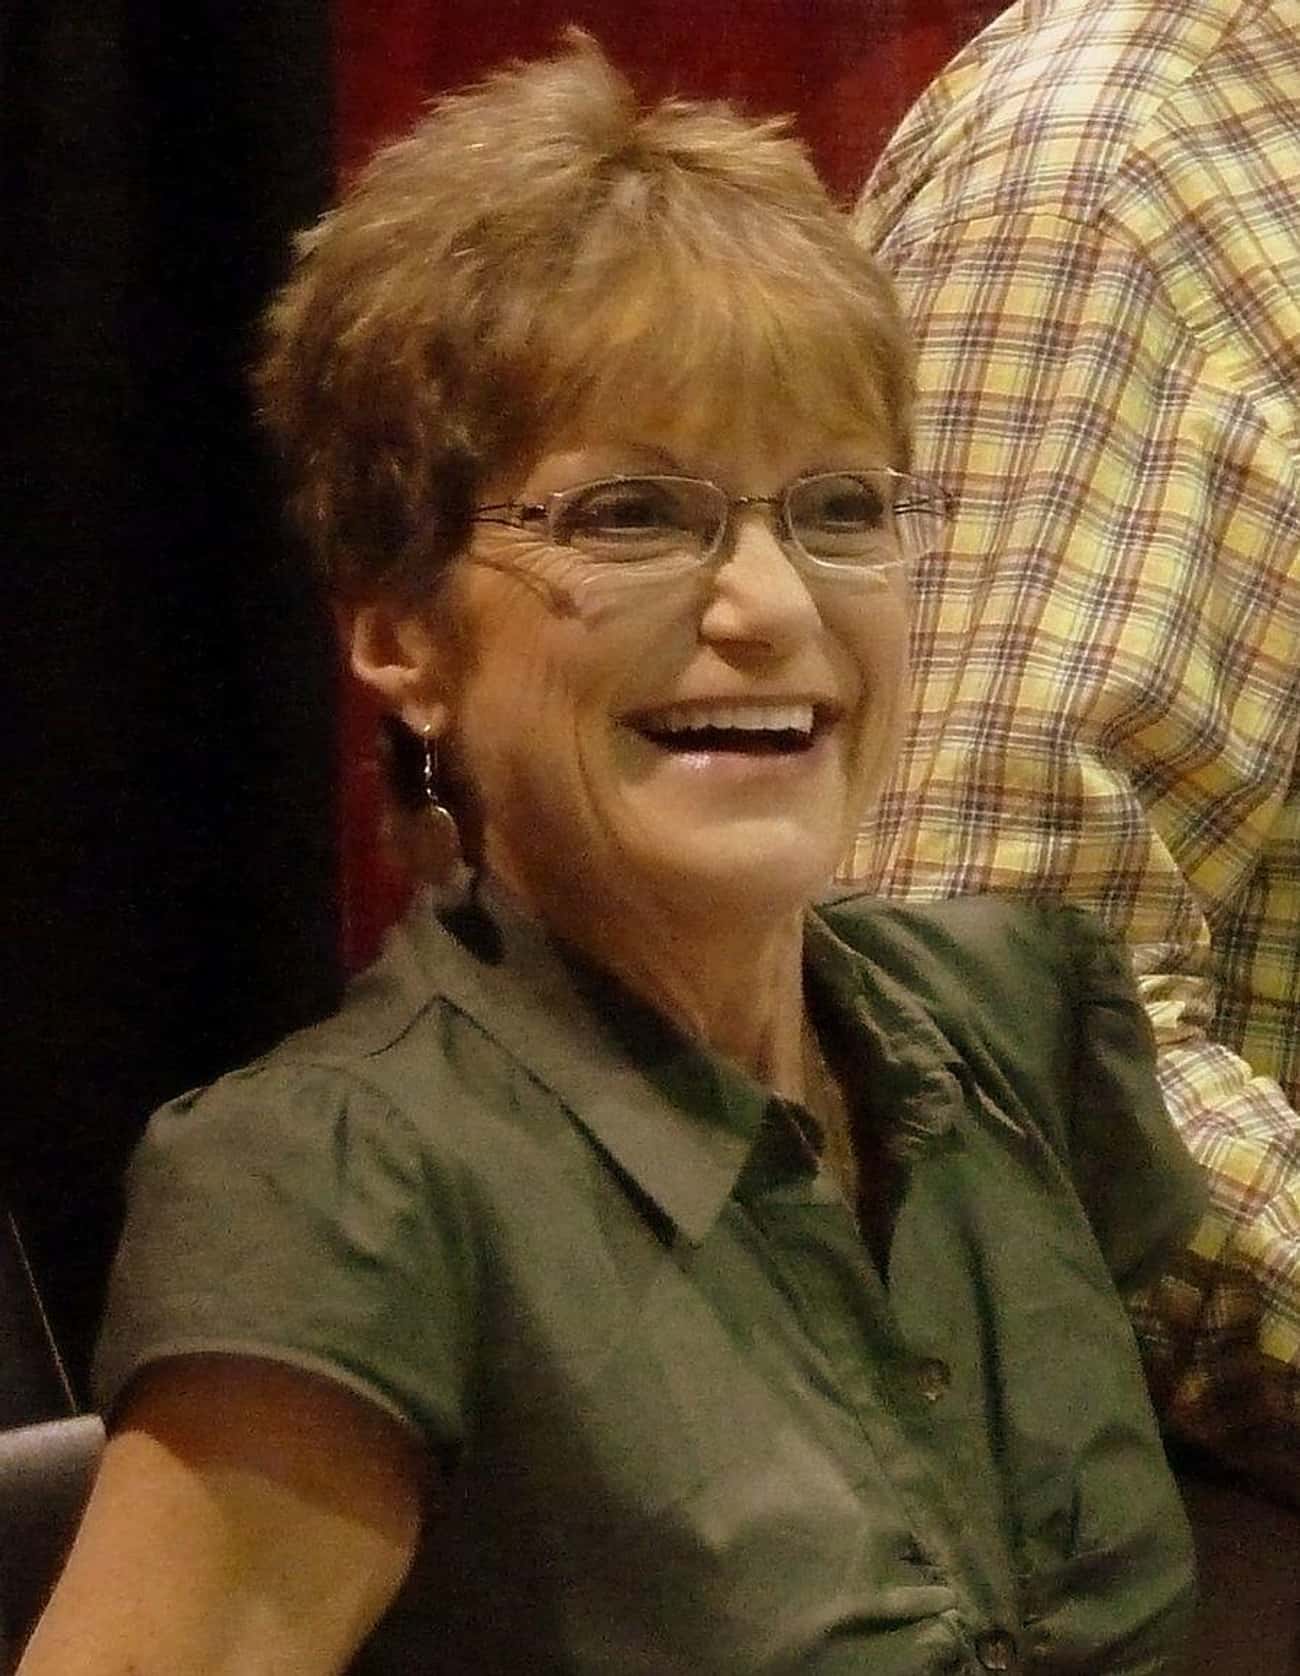 Denise Nickerson